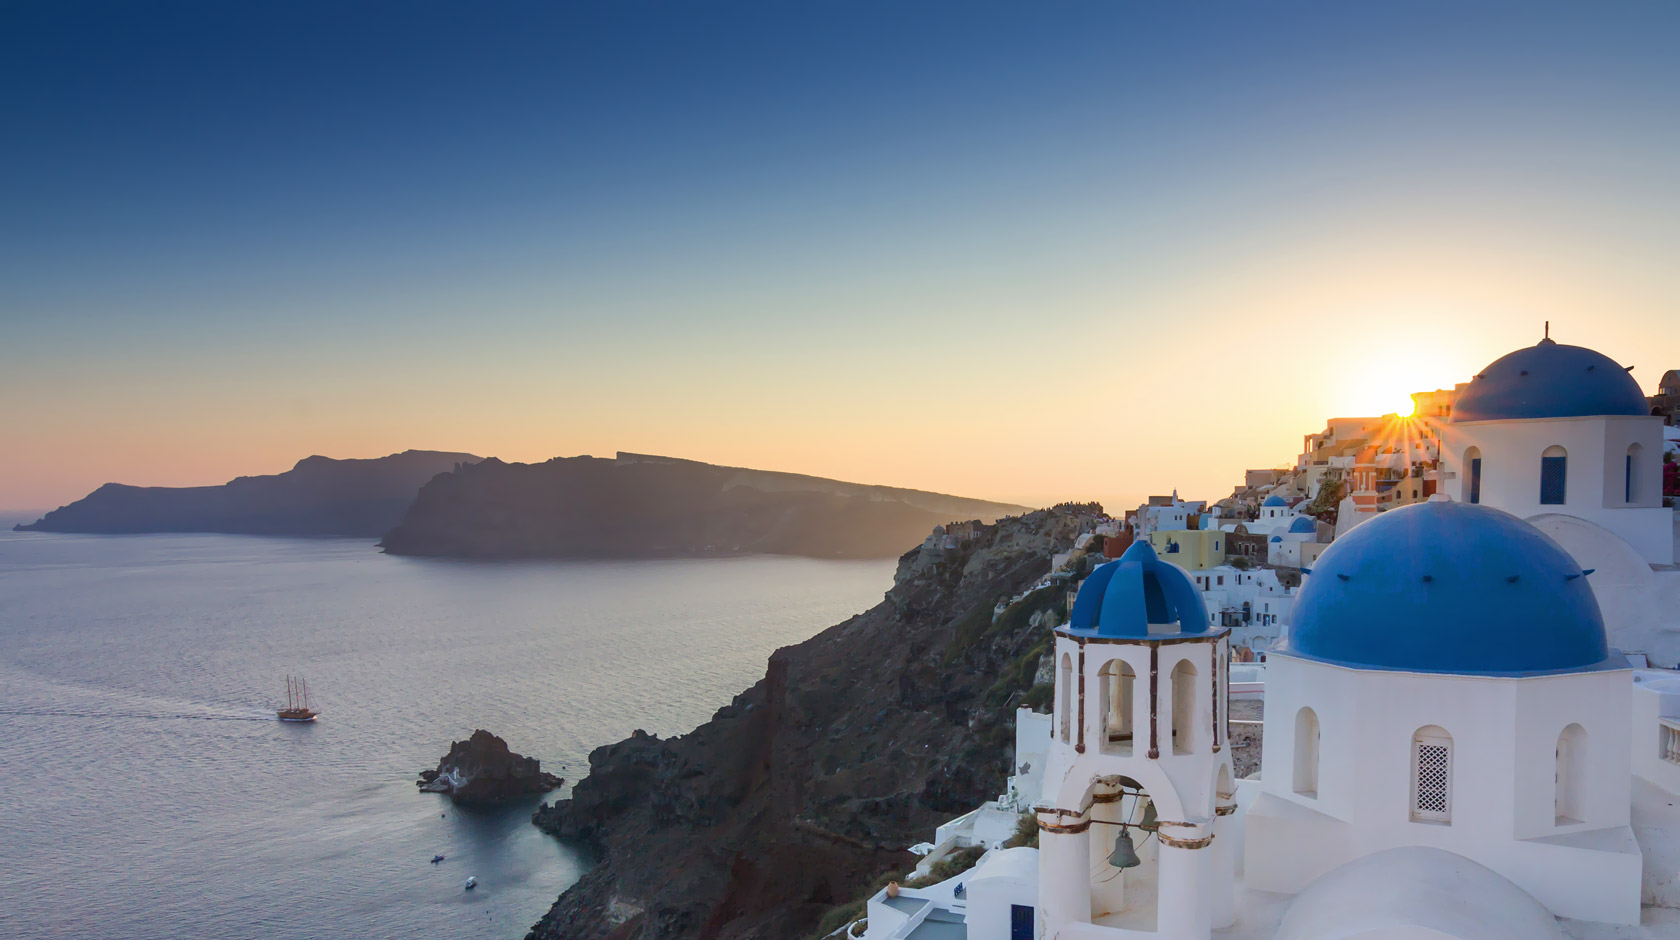 Oia Santorini Greece - Feel the magic